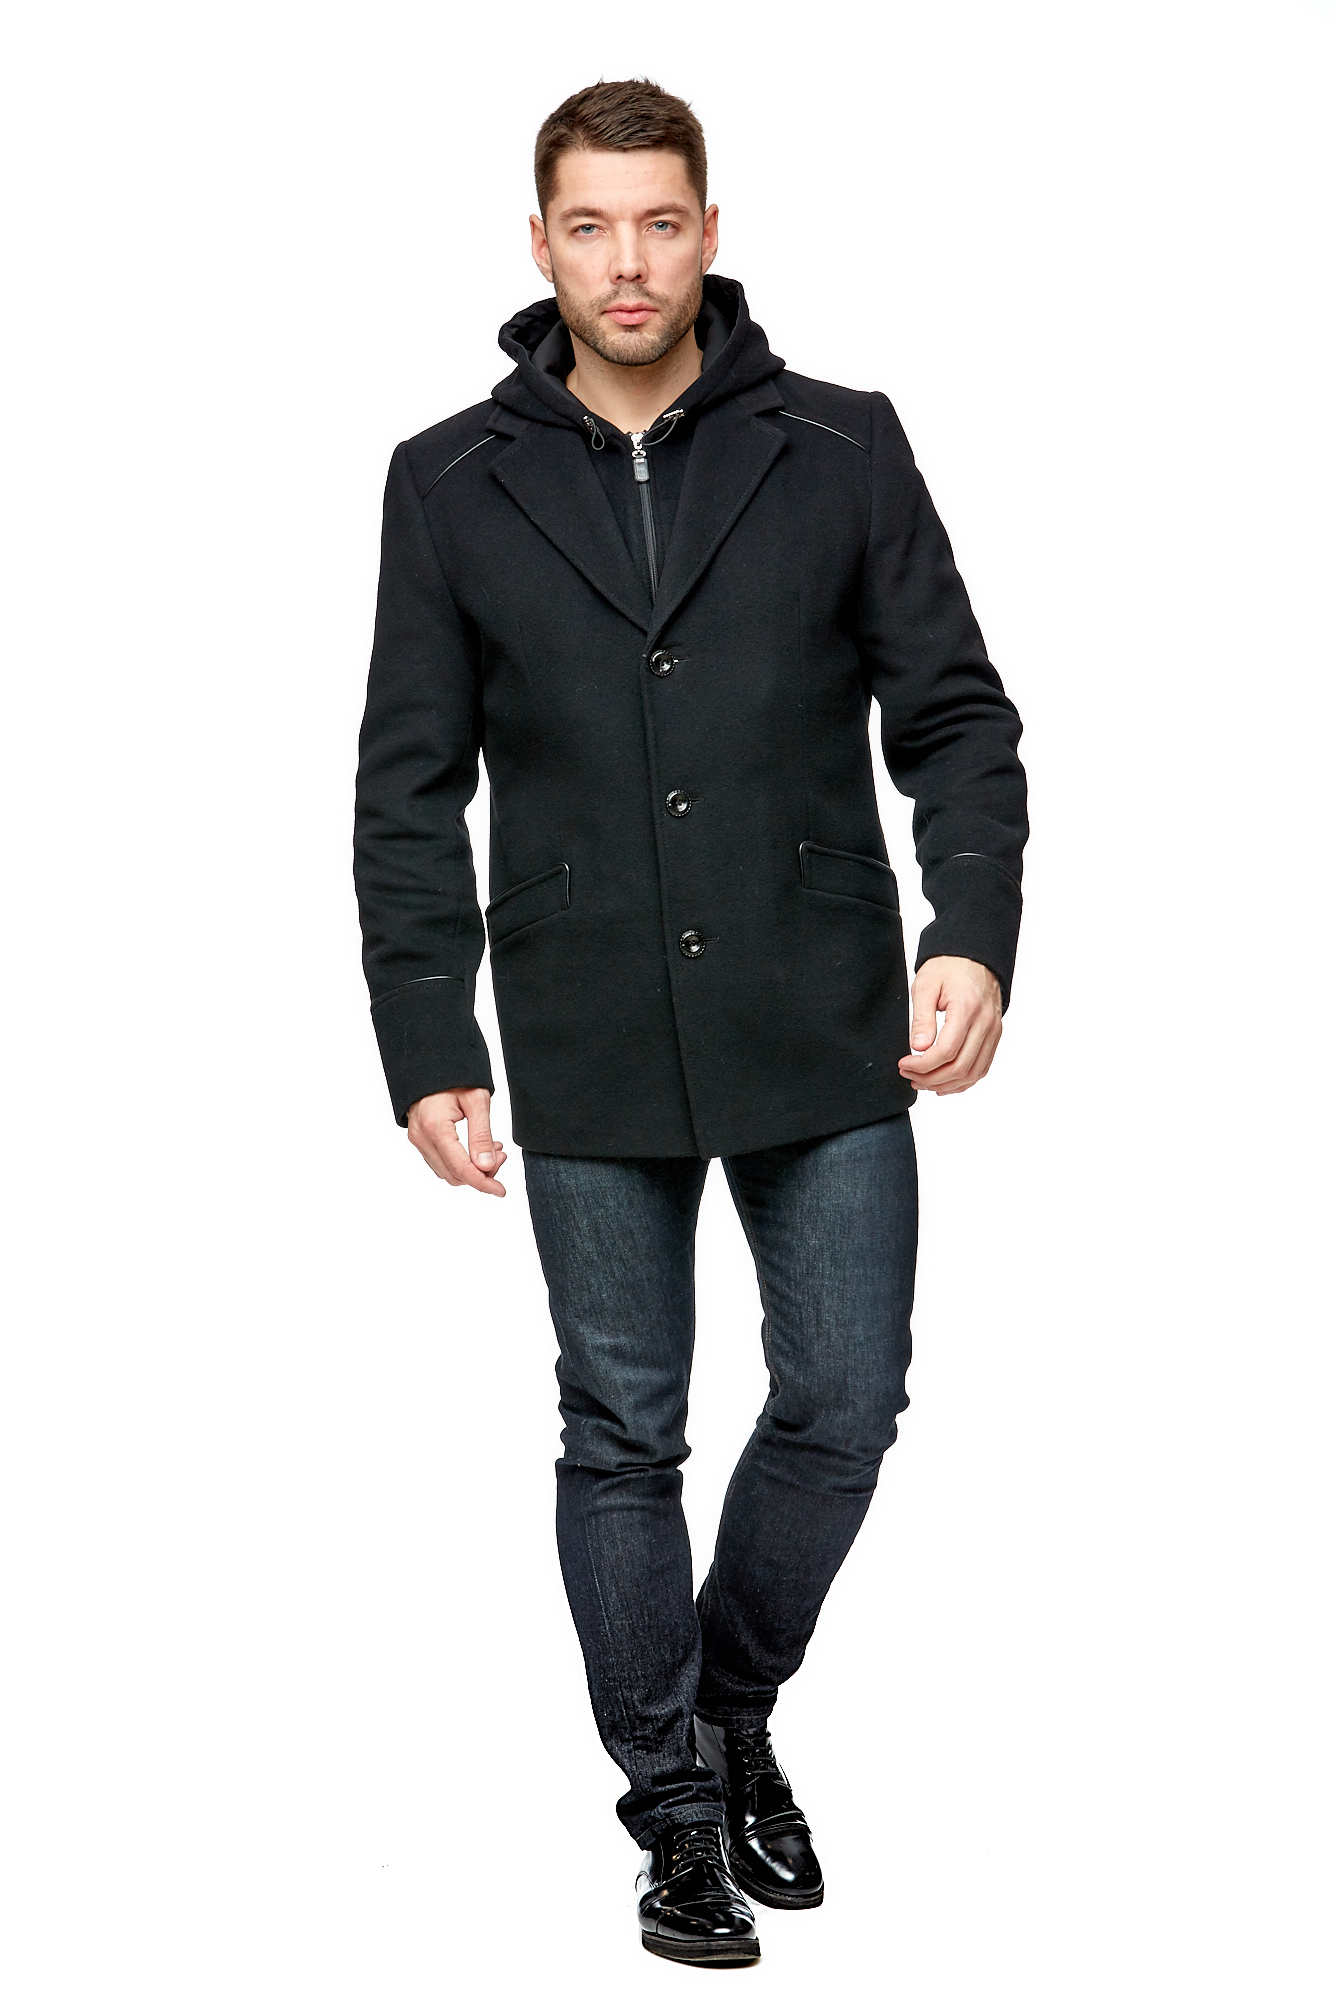 Мужское пальто из текстиля с воротником МОСМЕХА черного цвета